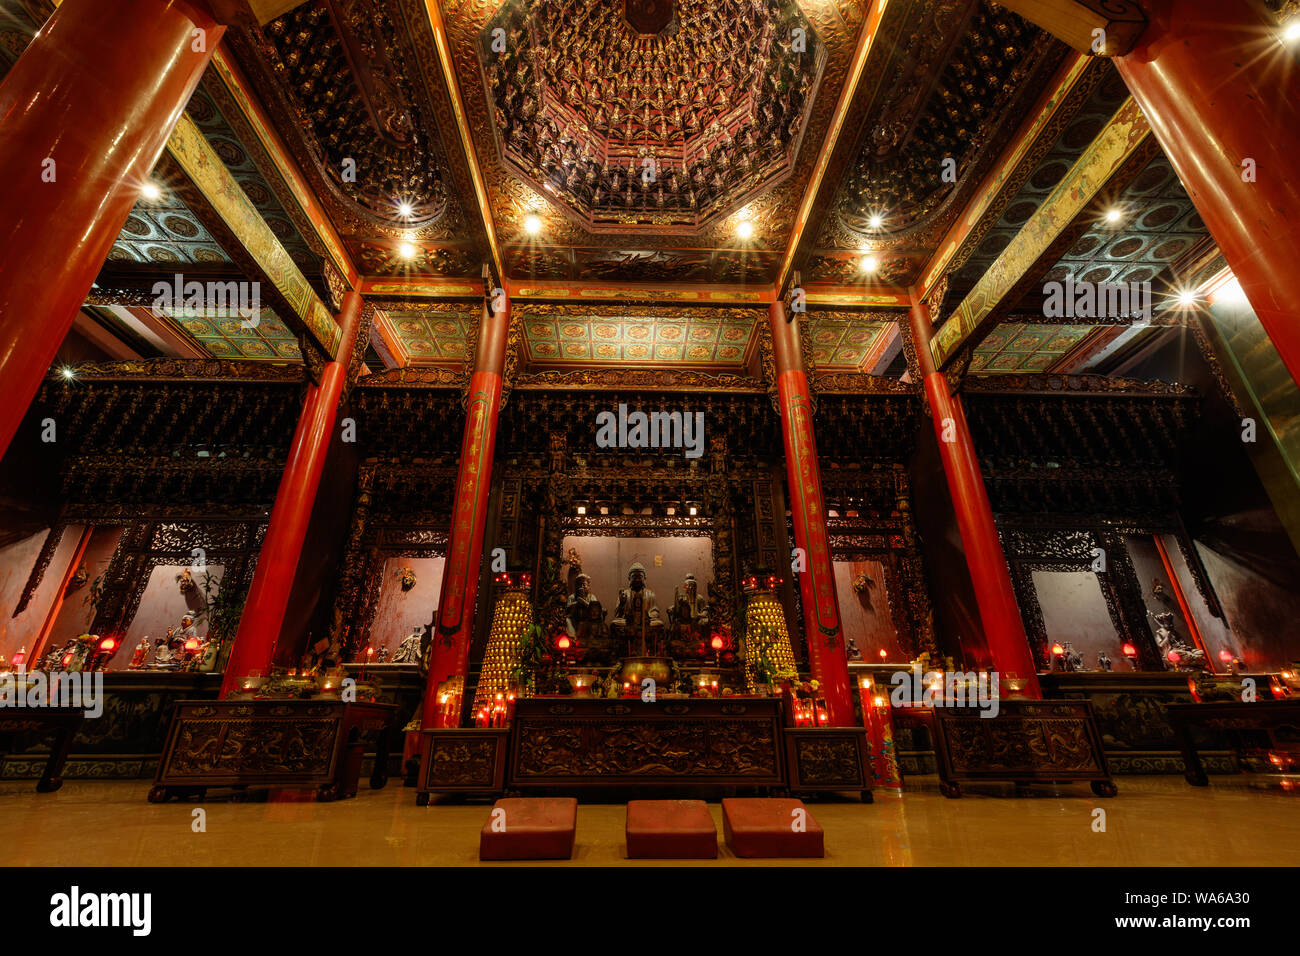 Innenraum des Vihara Satya Dharma, chinesischen buddhistischen Tempel, ehrt Tianhou Mazu, Chinesischen Meer Göttin. Tanjung Benoa, Bali, Indonesien. Nacht. Stockfoto